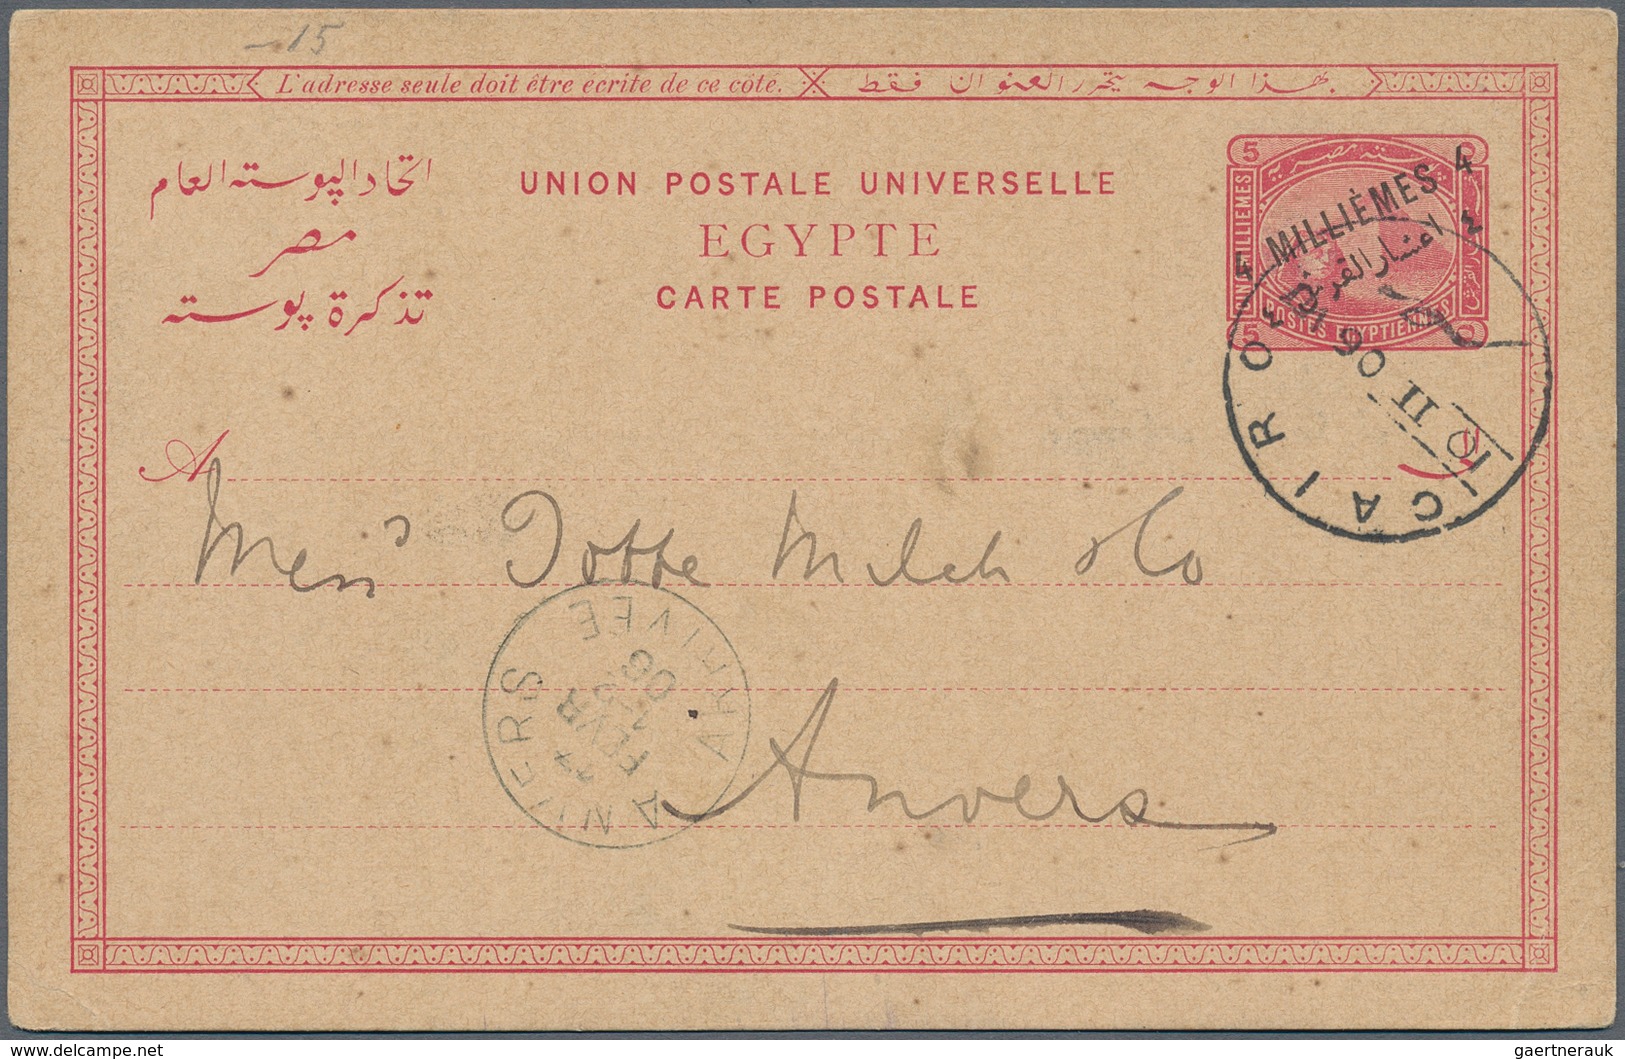 Ägypten: 1880-1990, Posten mit über 200 Briefen, Belegen und Ganzsachen, dabei bessere Stempel, Hote